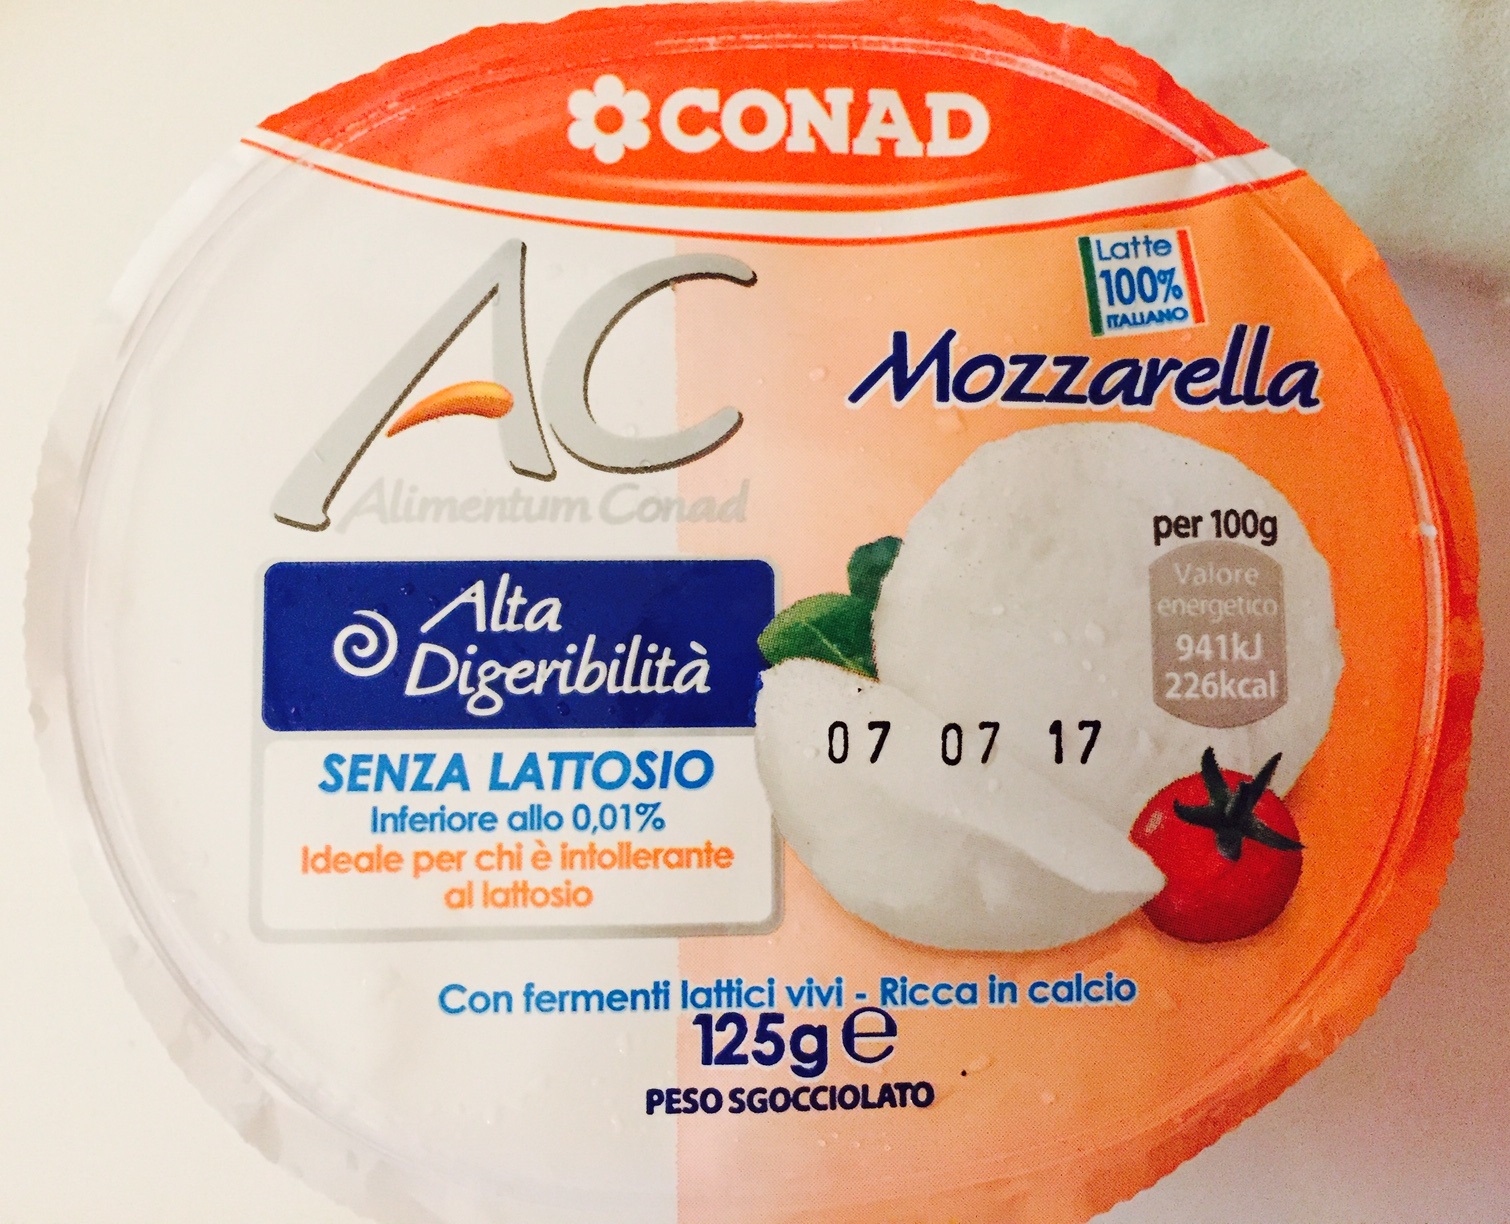 Mozzarella Conad - lattosio <0,01 Image